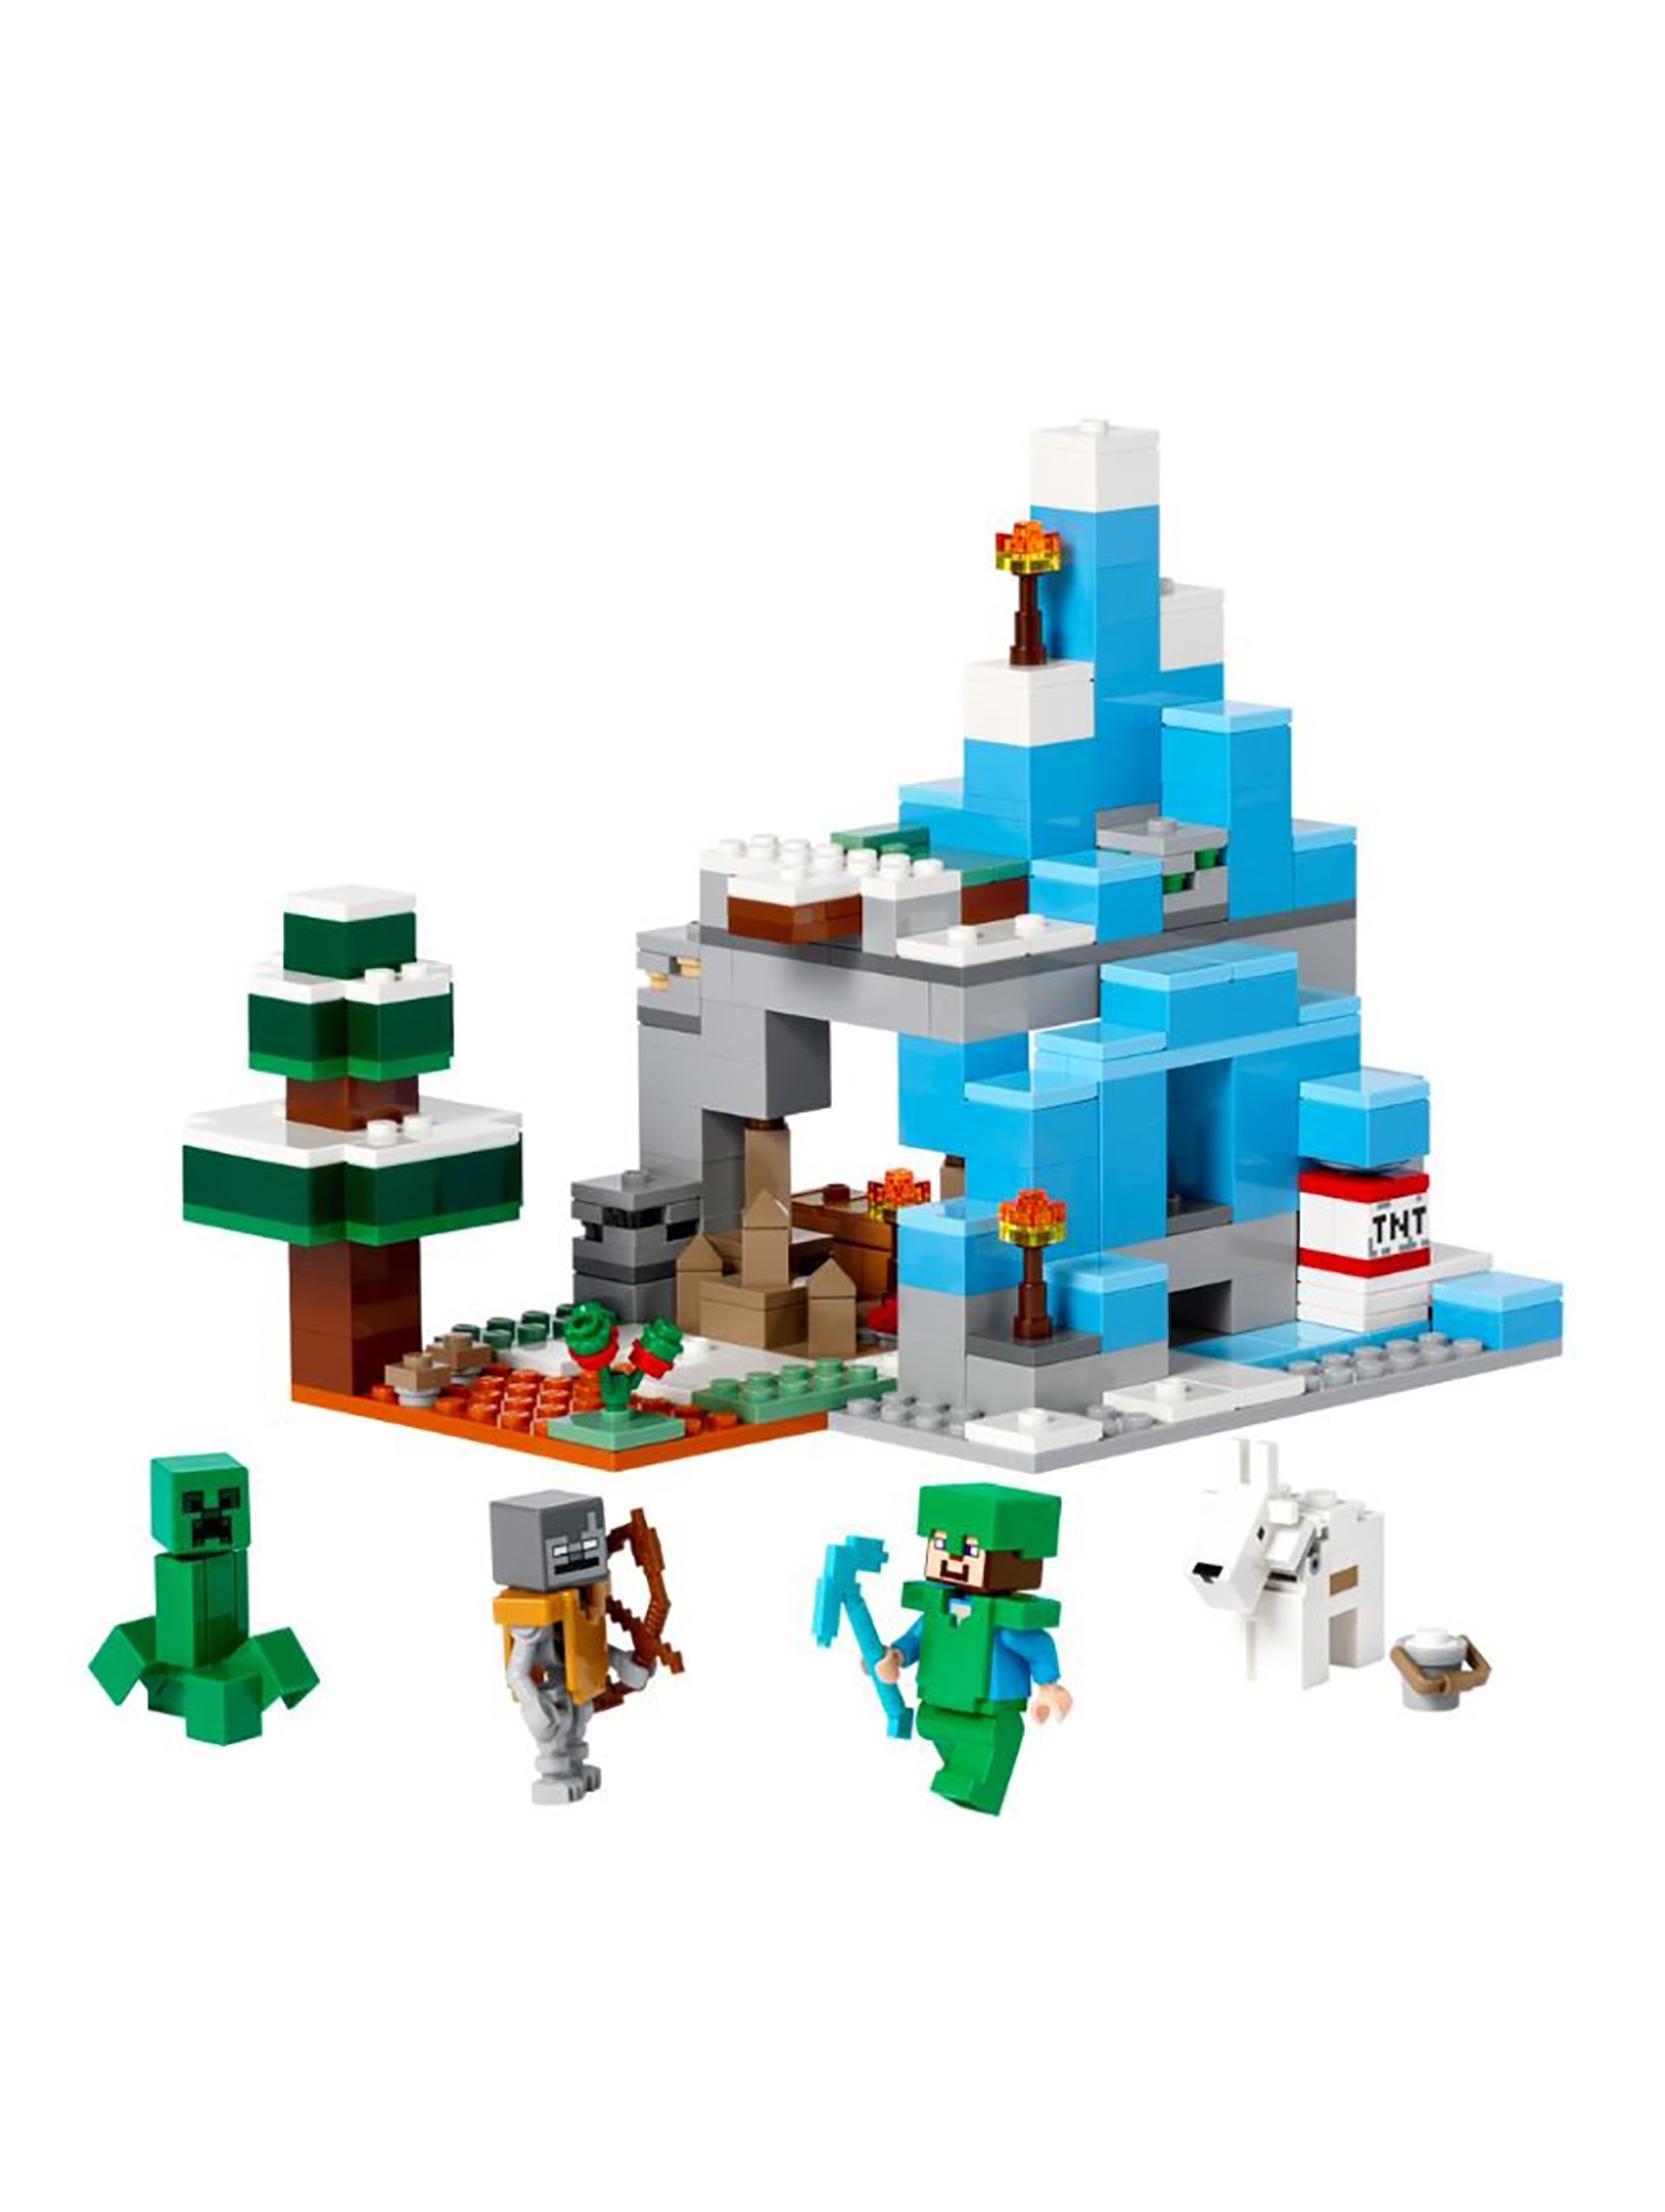 Klocki LEGO Minecraft 21243 Ośnieżone szczyty - 304 elementy,wiek 8 +